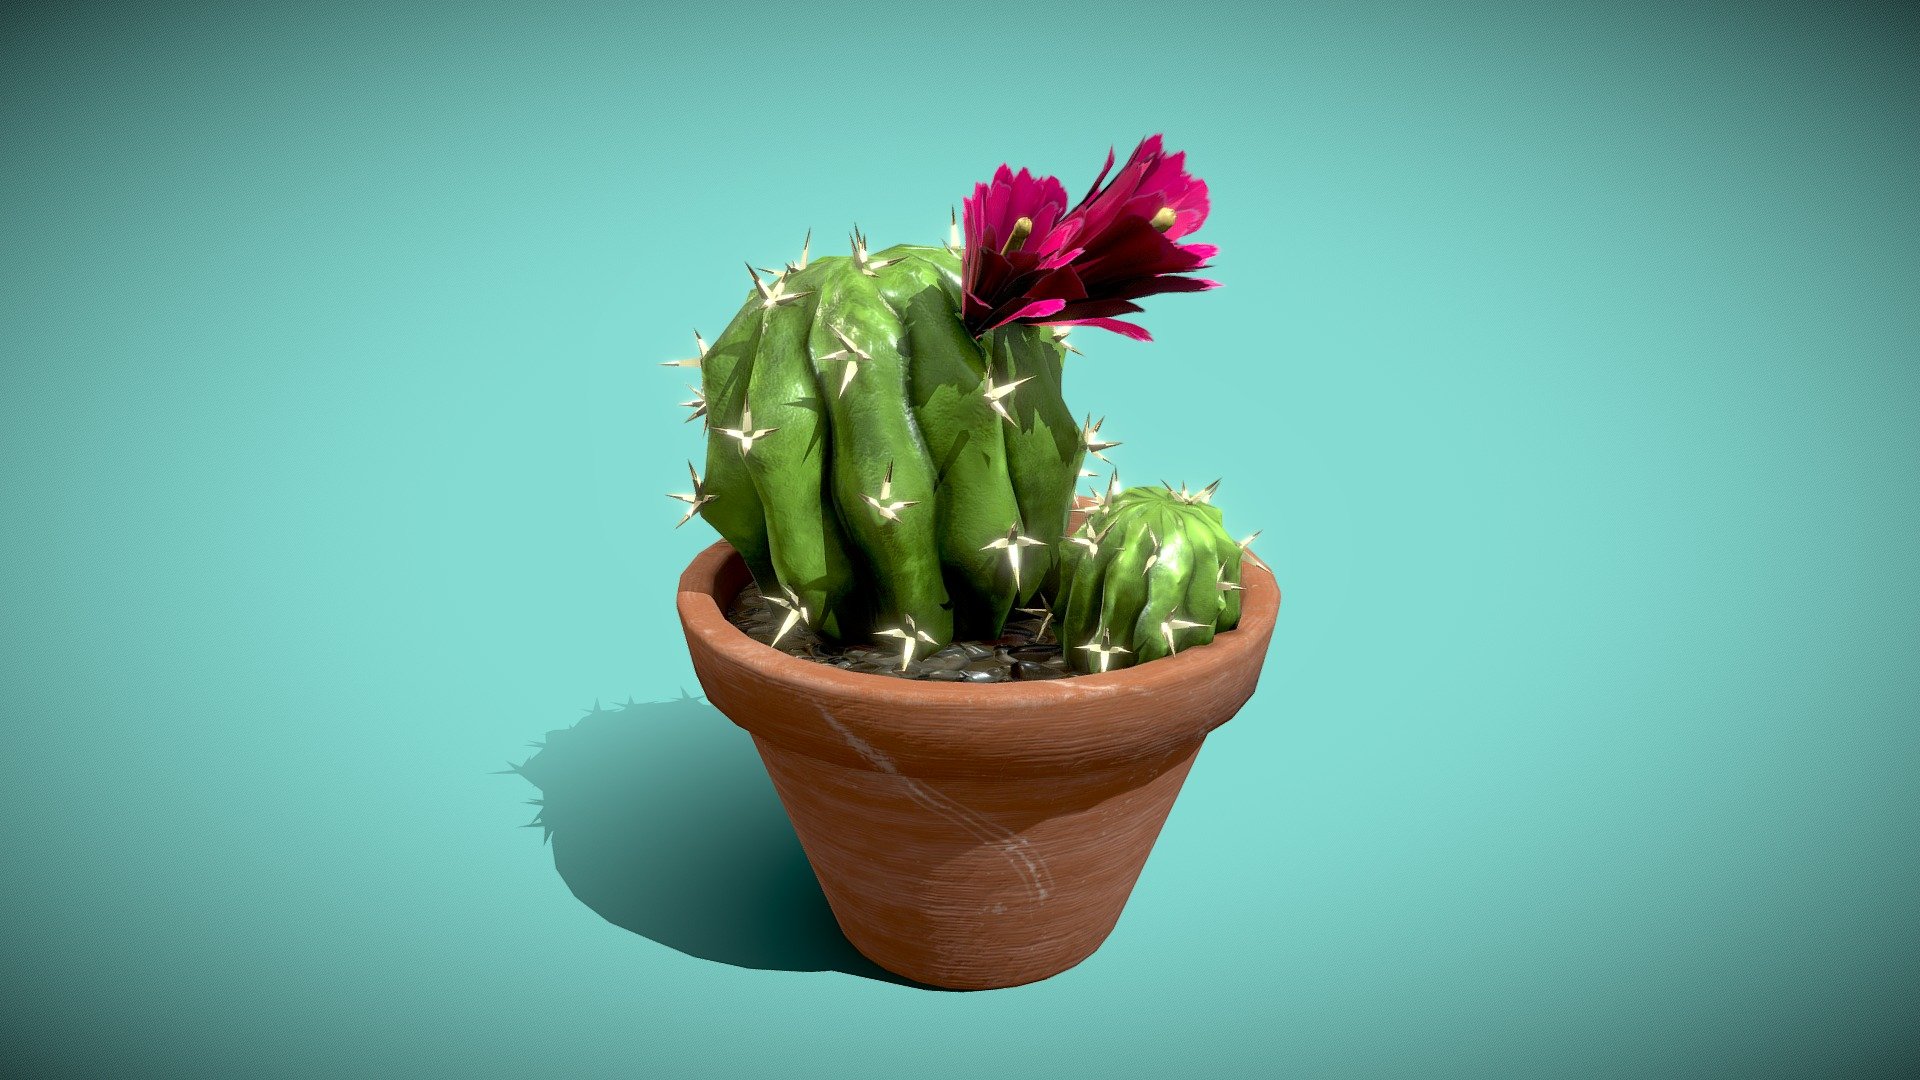 Cactus in pot

4096x4096 PNG texture - Cactus - Buy Royalty Free 3D model by Karolina Renkiewicz (@KarolinaRenkiewicz) 3d model